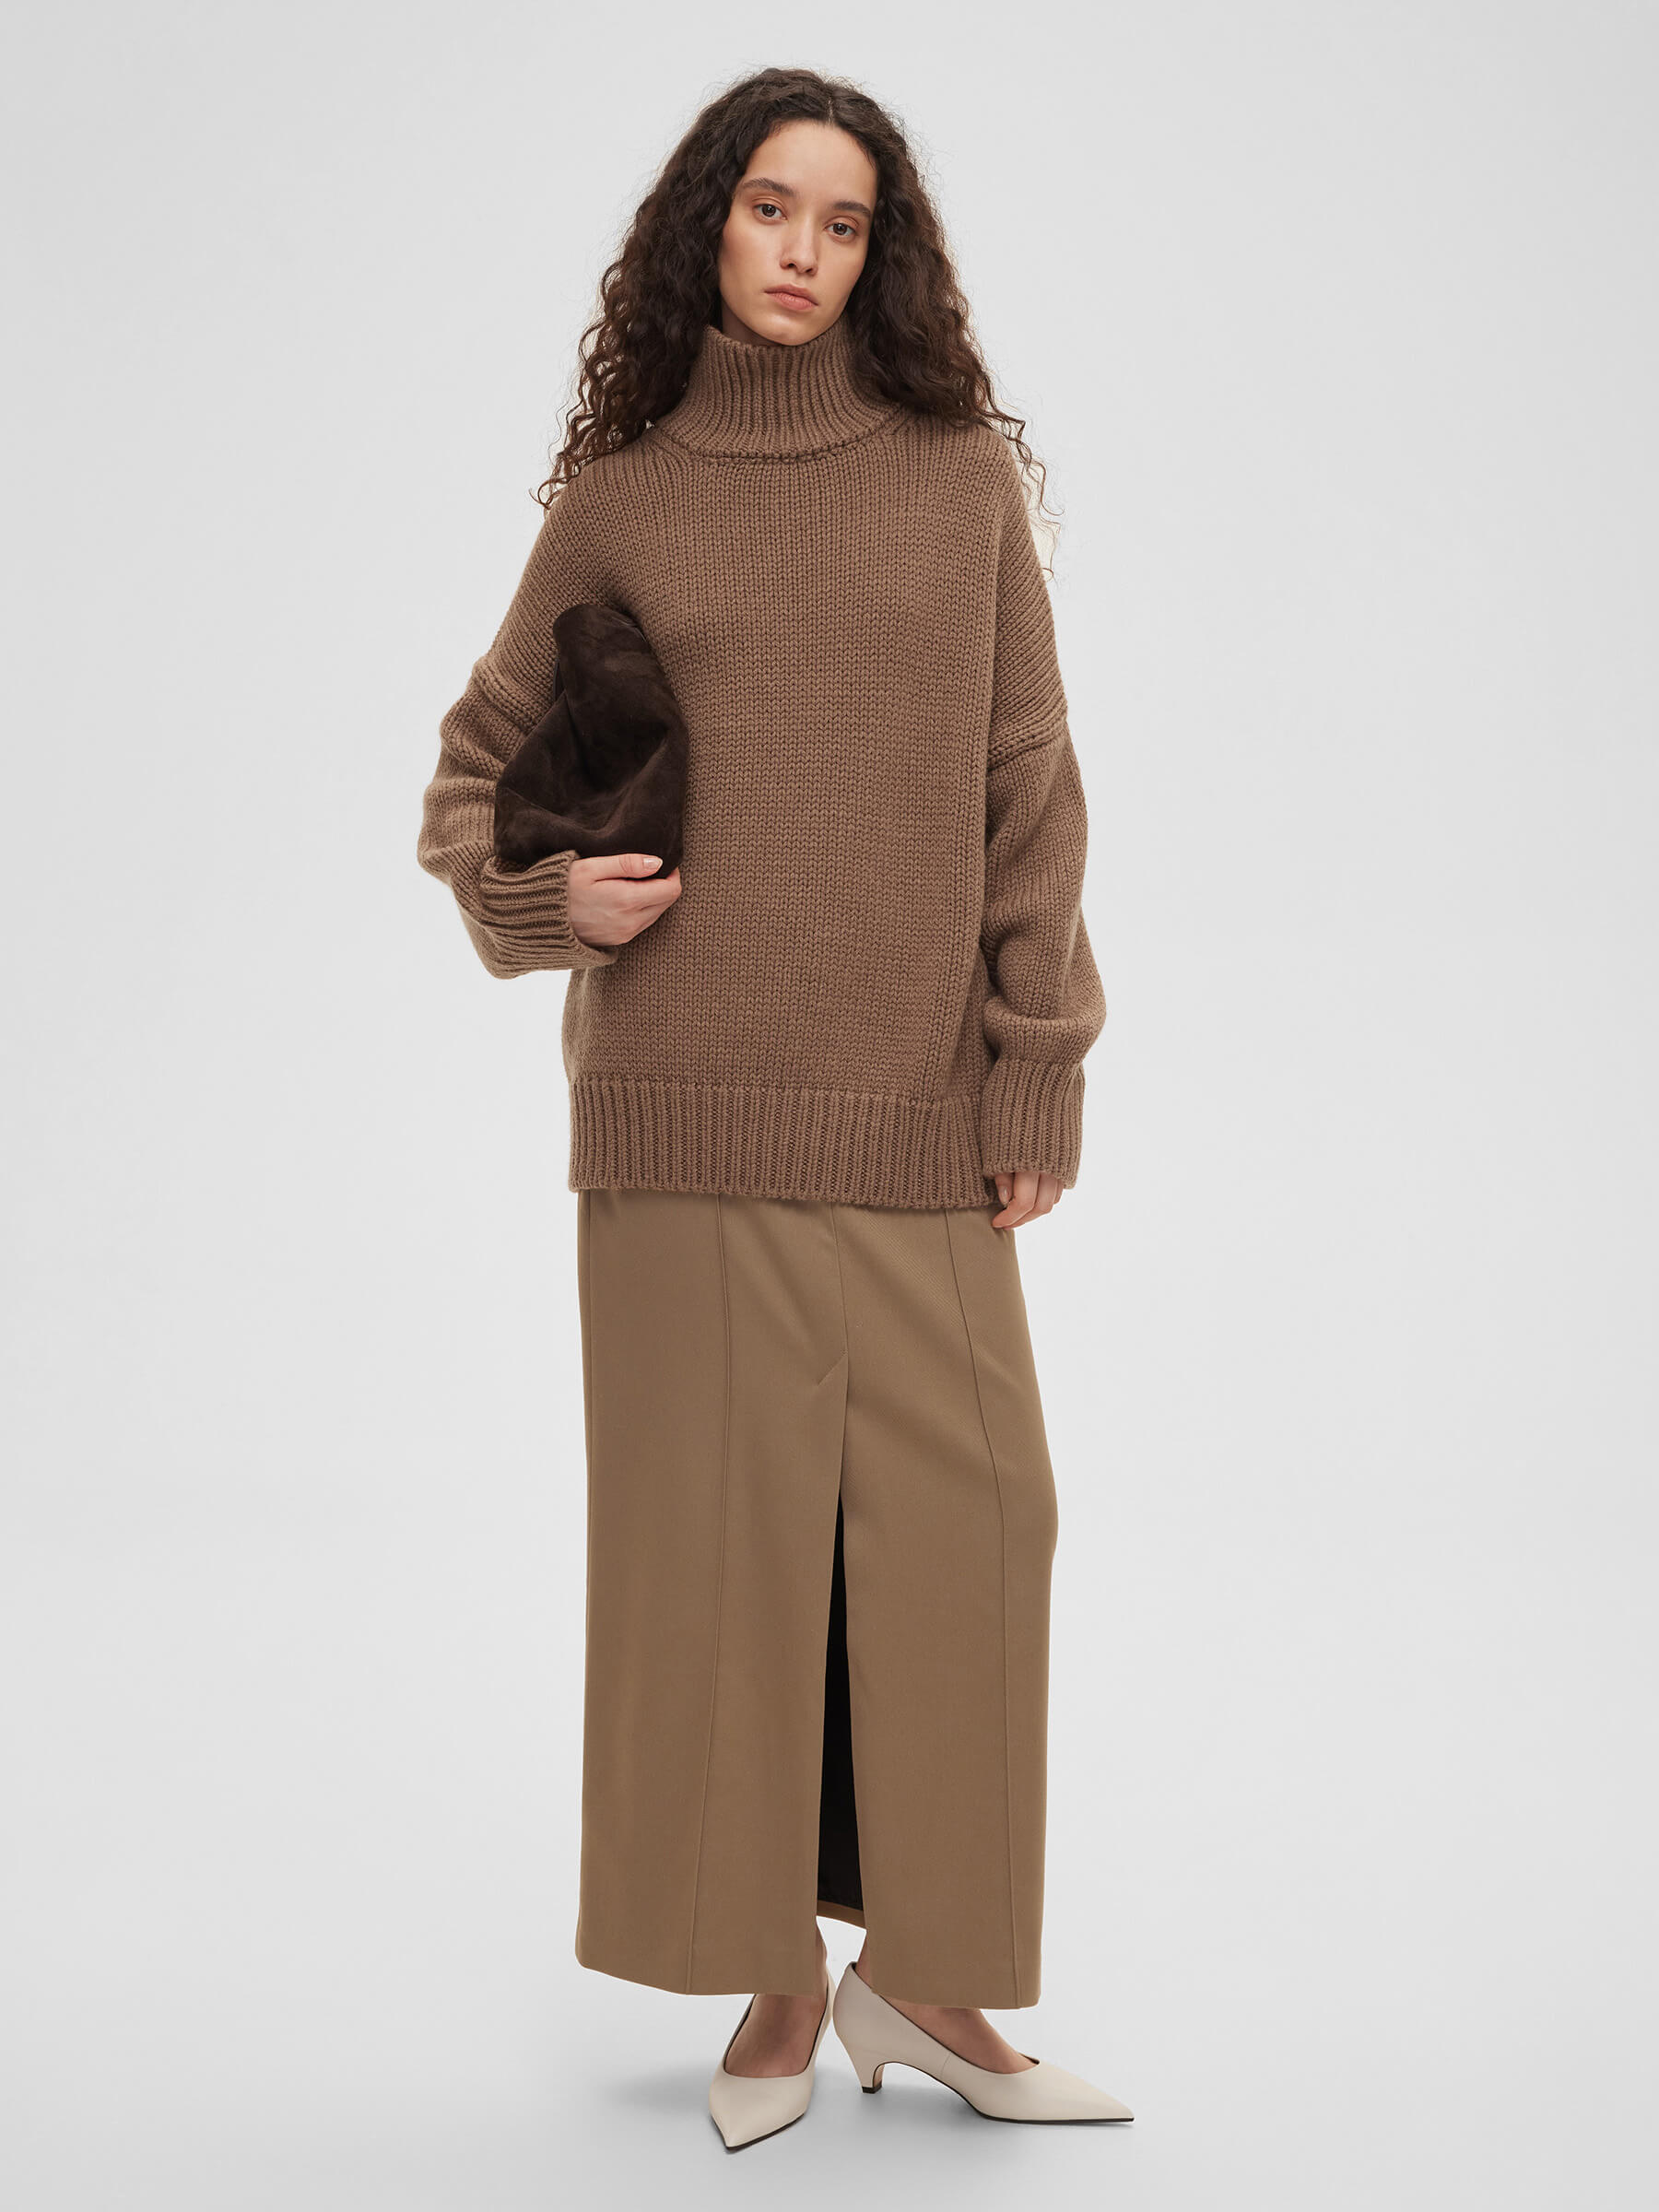 Свитер женский крупной вязки из шерсти, цвет – кофейный свитер длинный рукав крупная вязка размер 40 42 зеленый